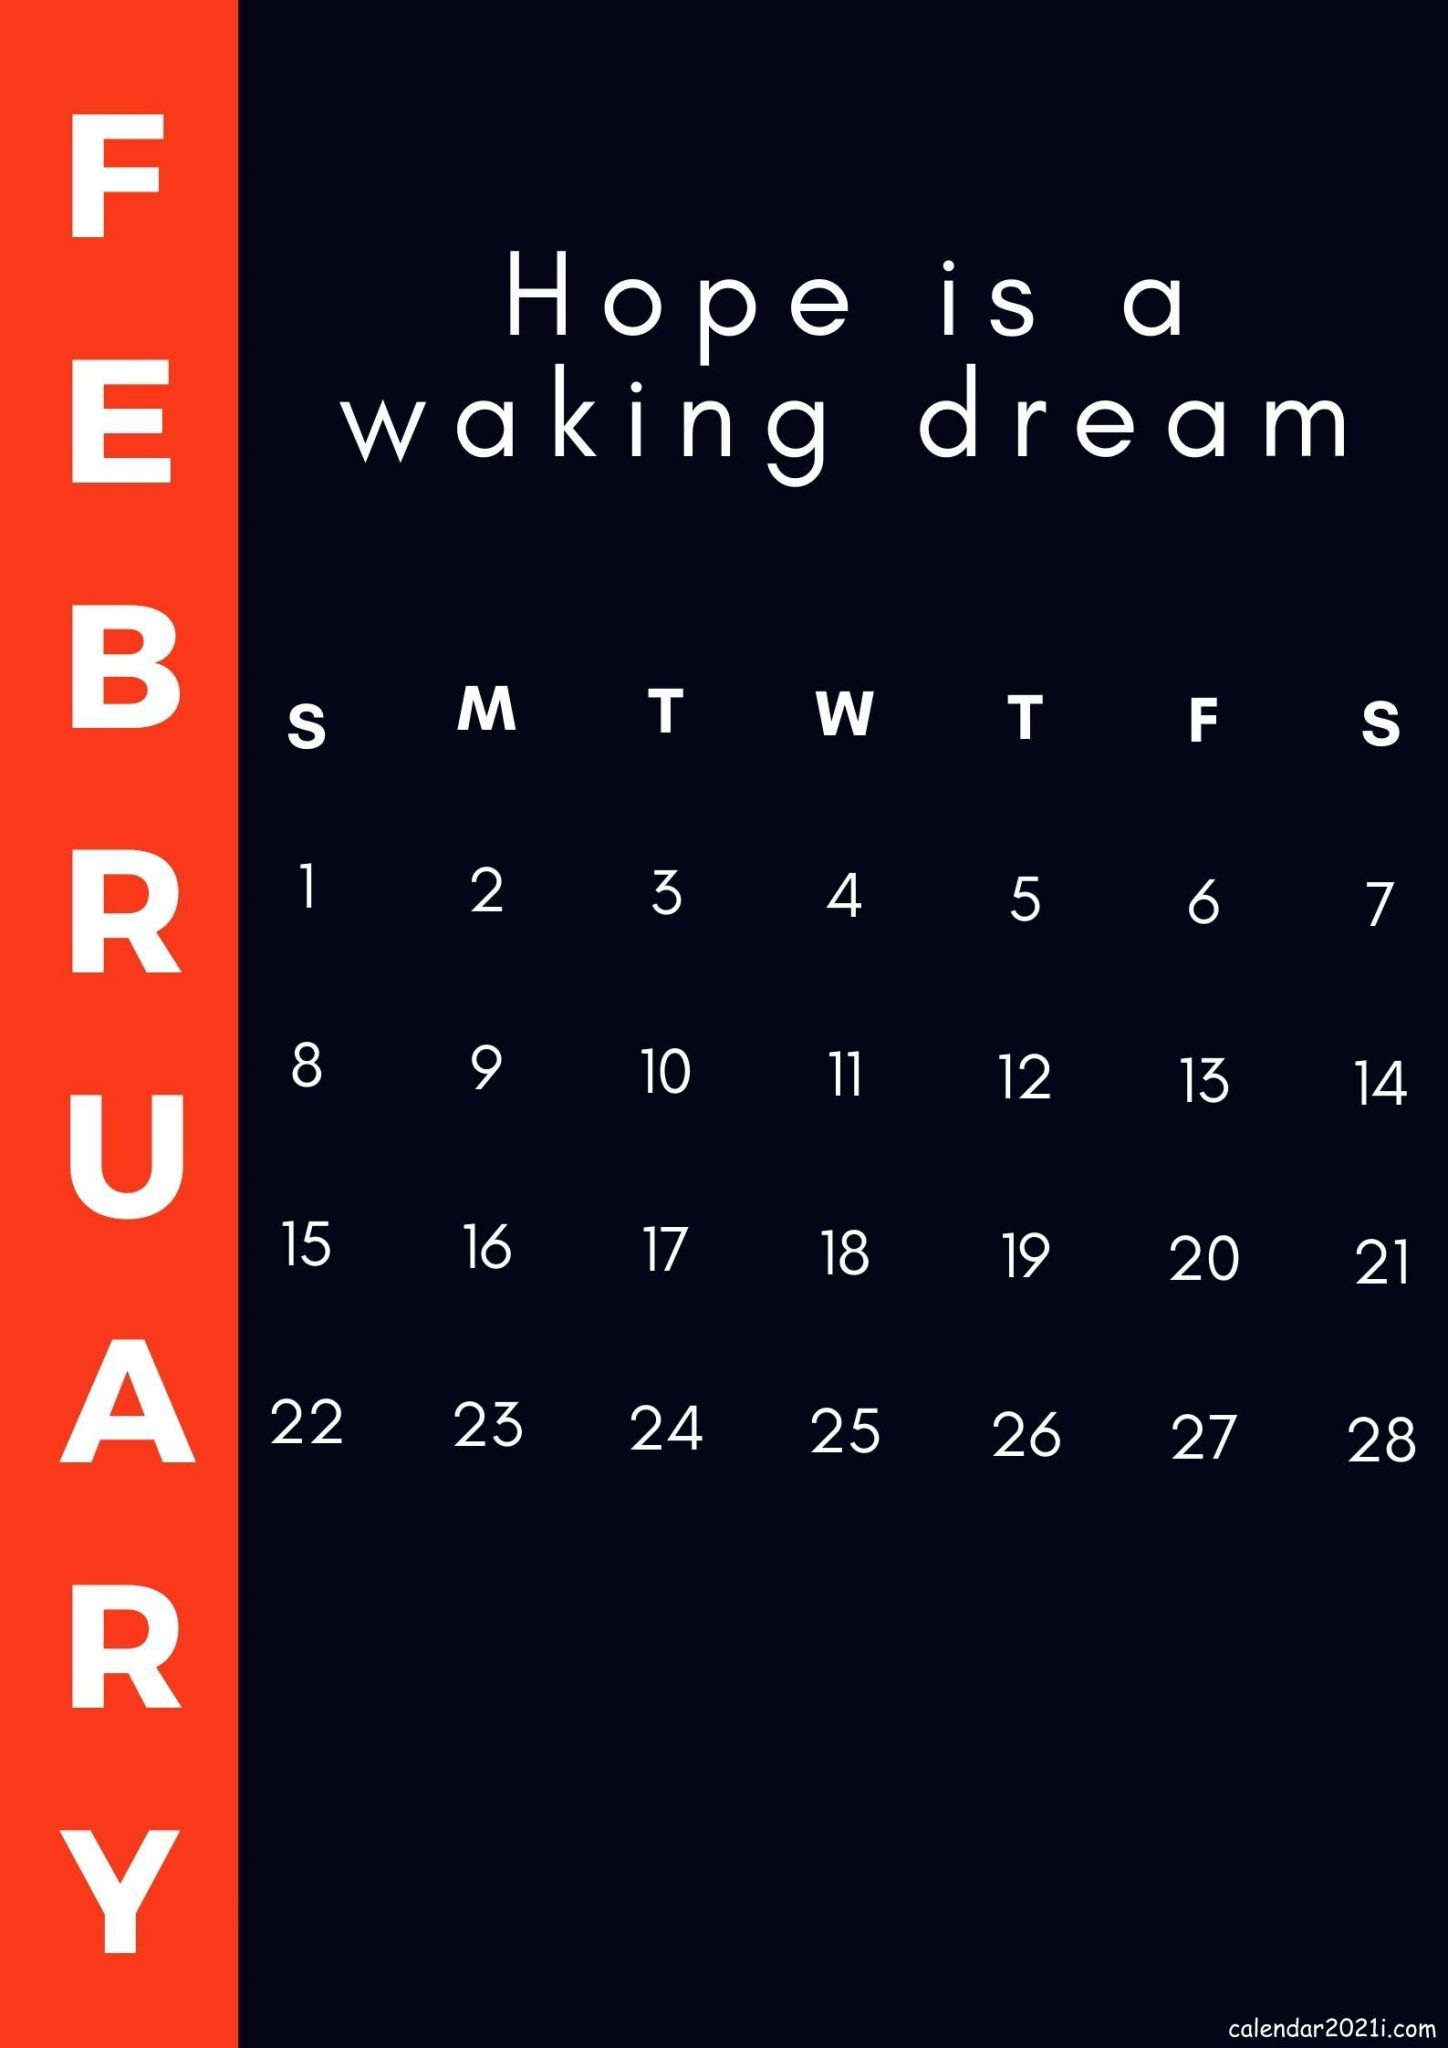 February 2021 Inspirational Calendar